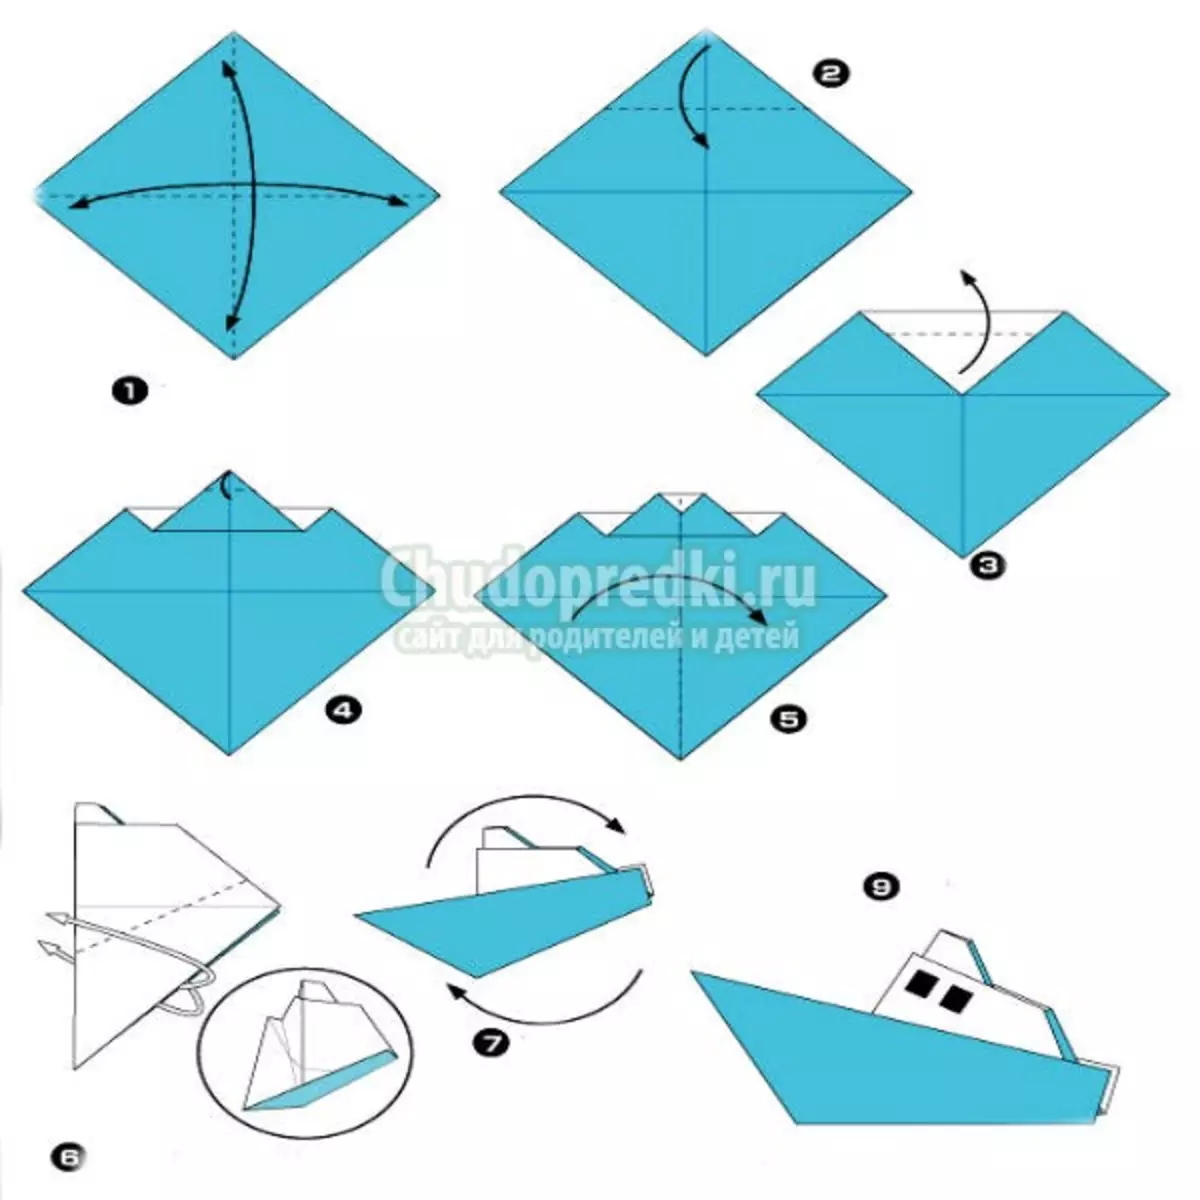 Kiel fari boaton-boaton: Paŝo post paŝo origami instrukciojn kun fotoj kaj videoj